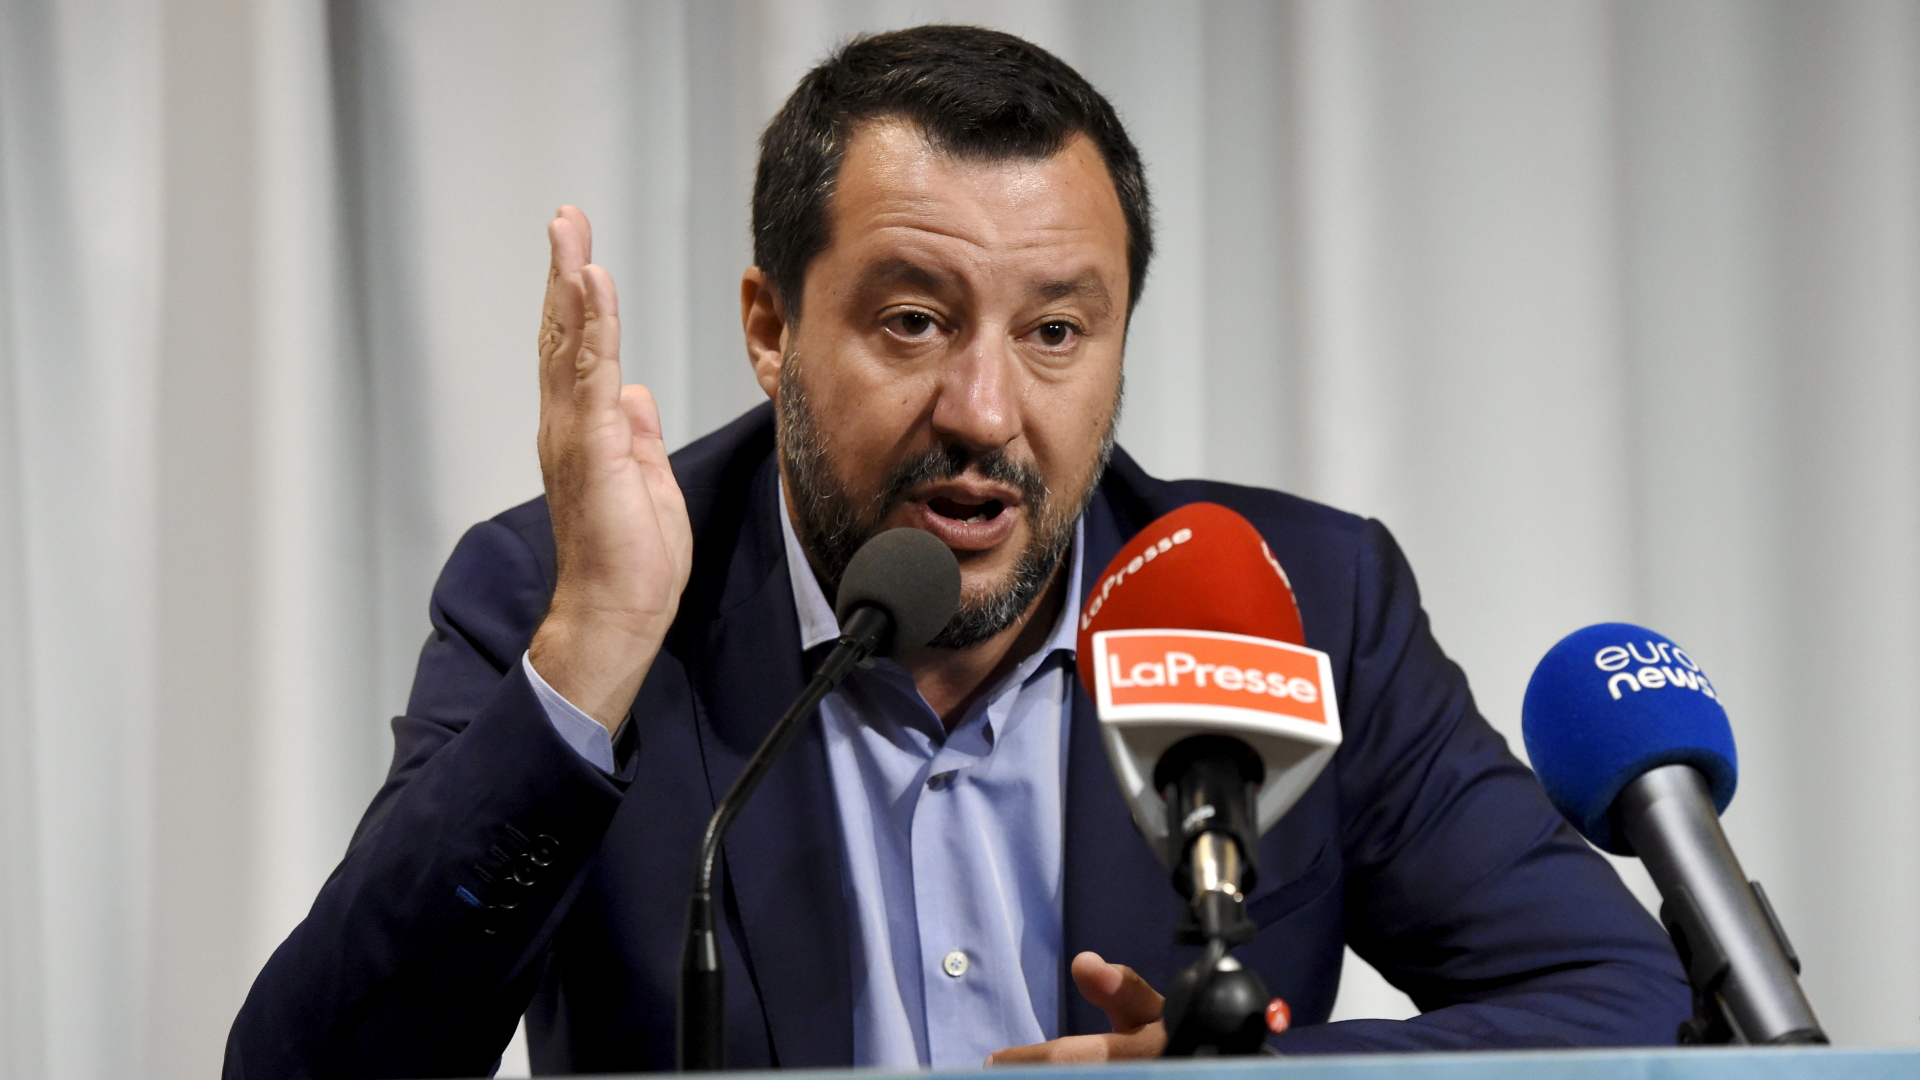 Der italienische Innenminister Matteo Salvini spricht auf einer Pressekonferenz zum Abschluss des EU-Ministertreffens in Helsinki. | REUTERS